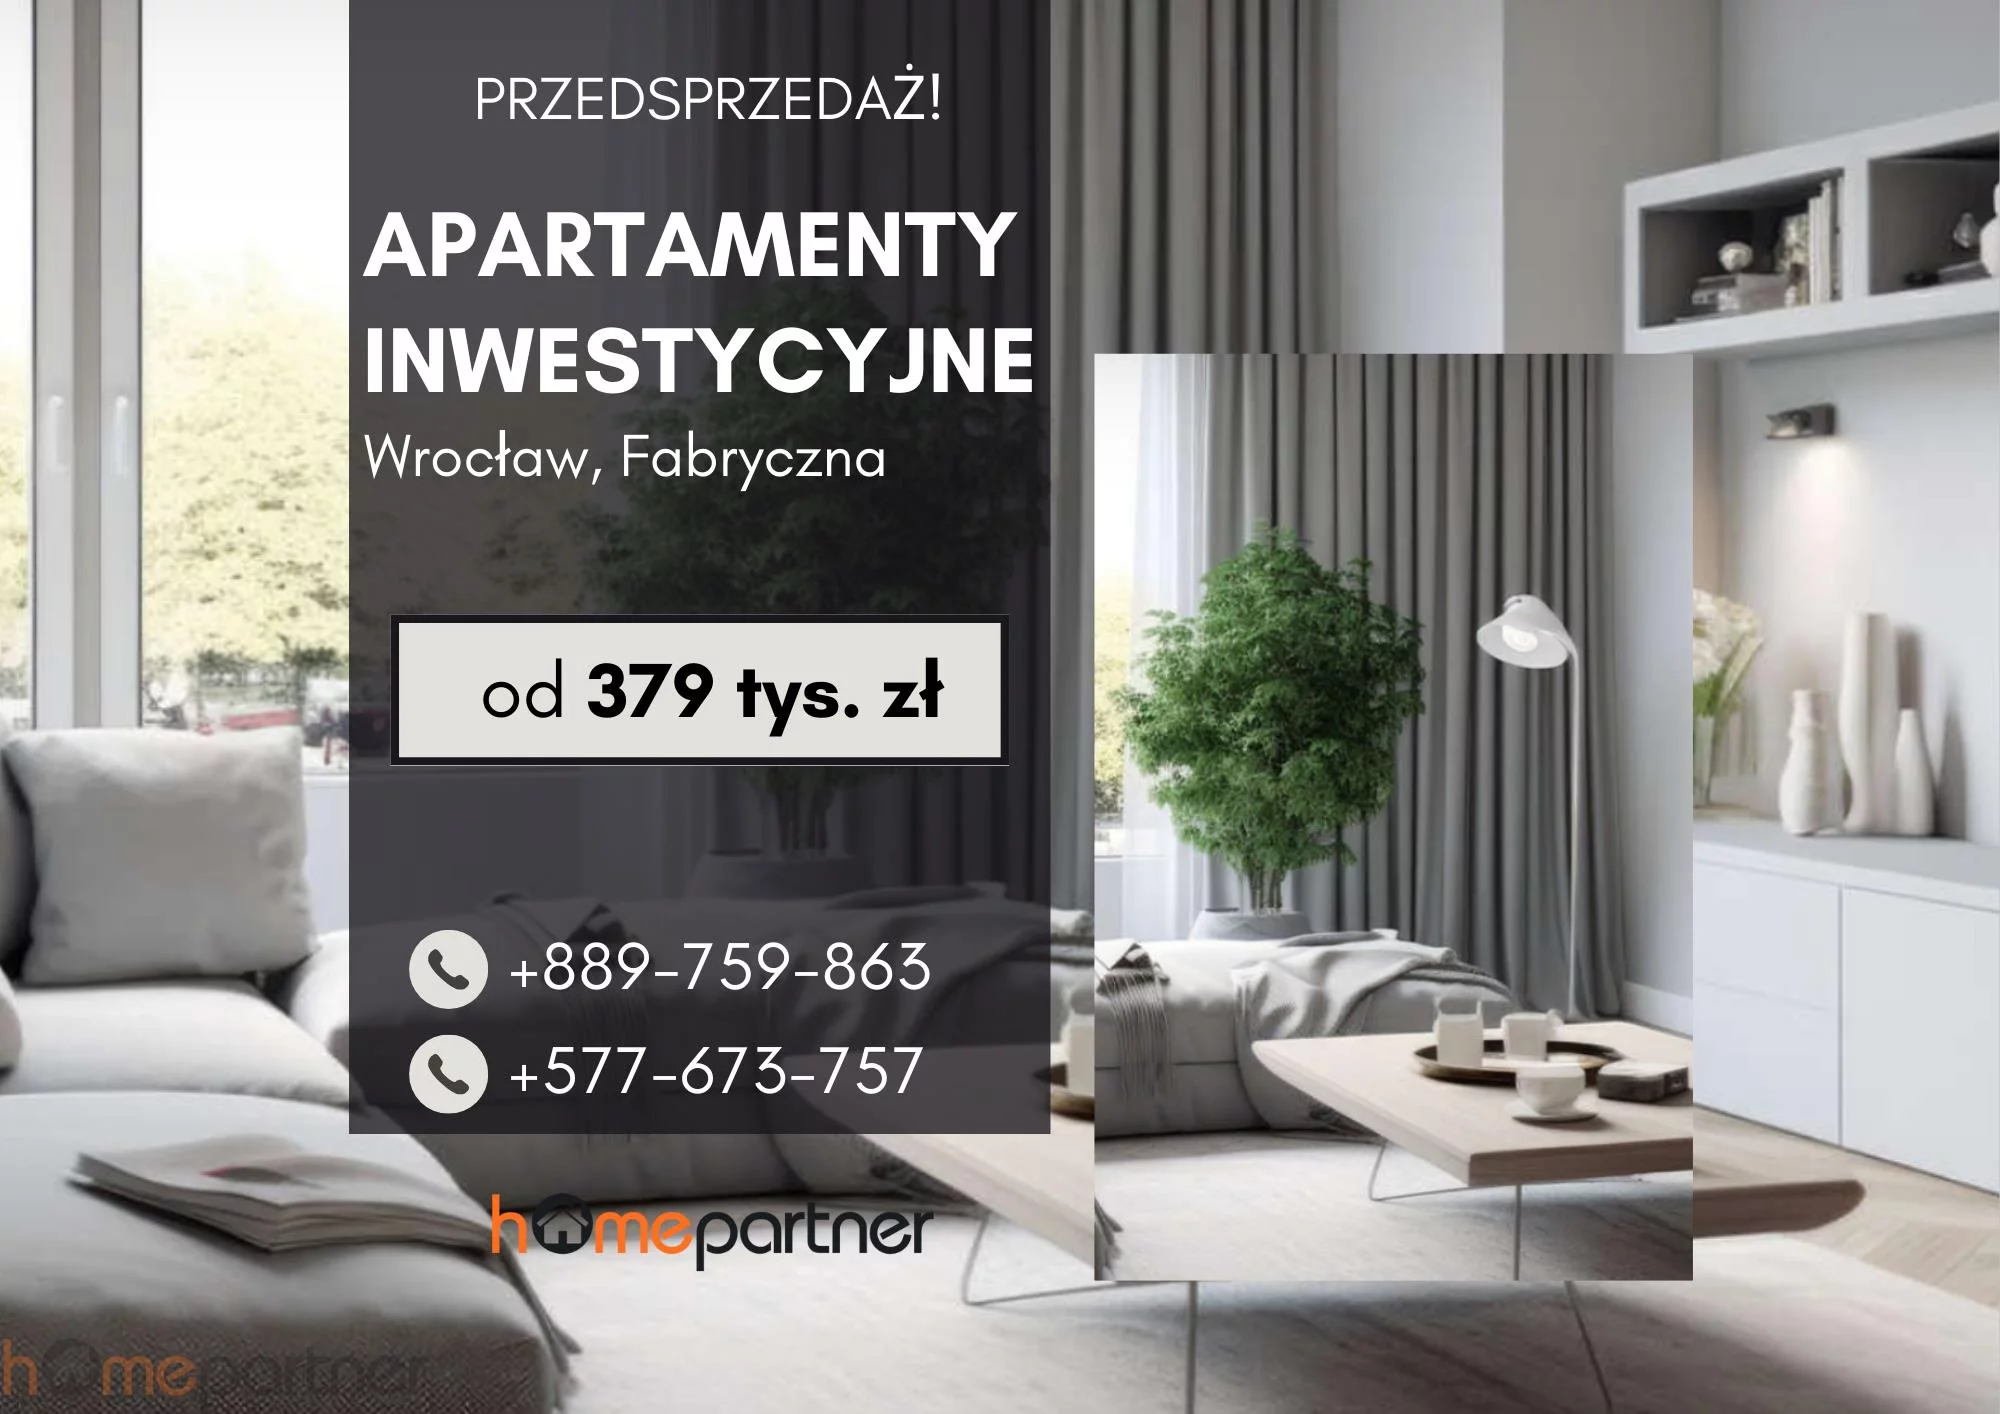 Mieszkanie jednopokojowe 25,79 m², Wrocław, Fabryczna, Sprzedaż